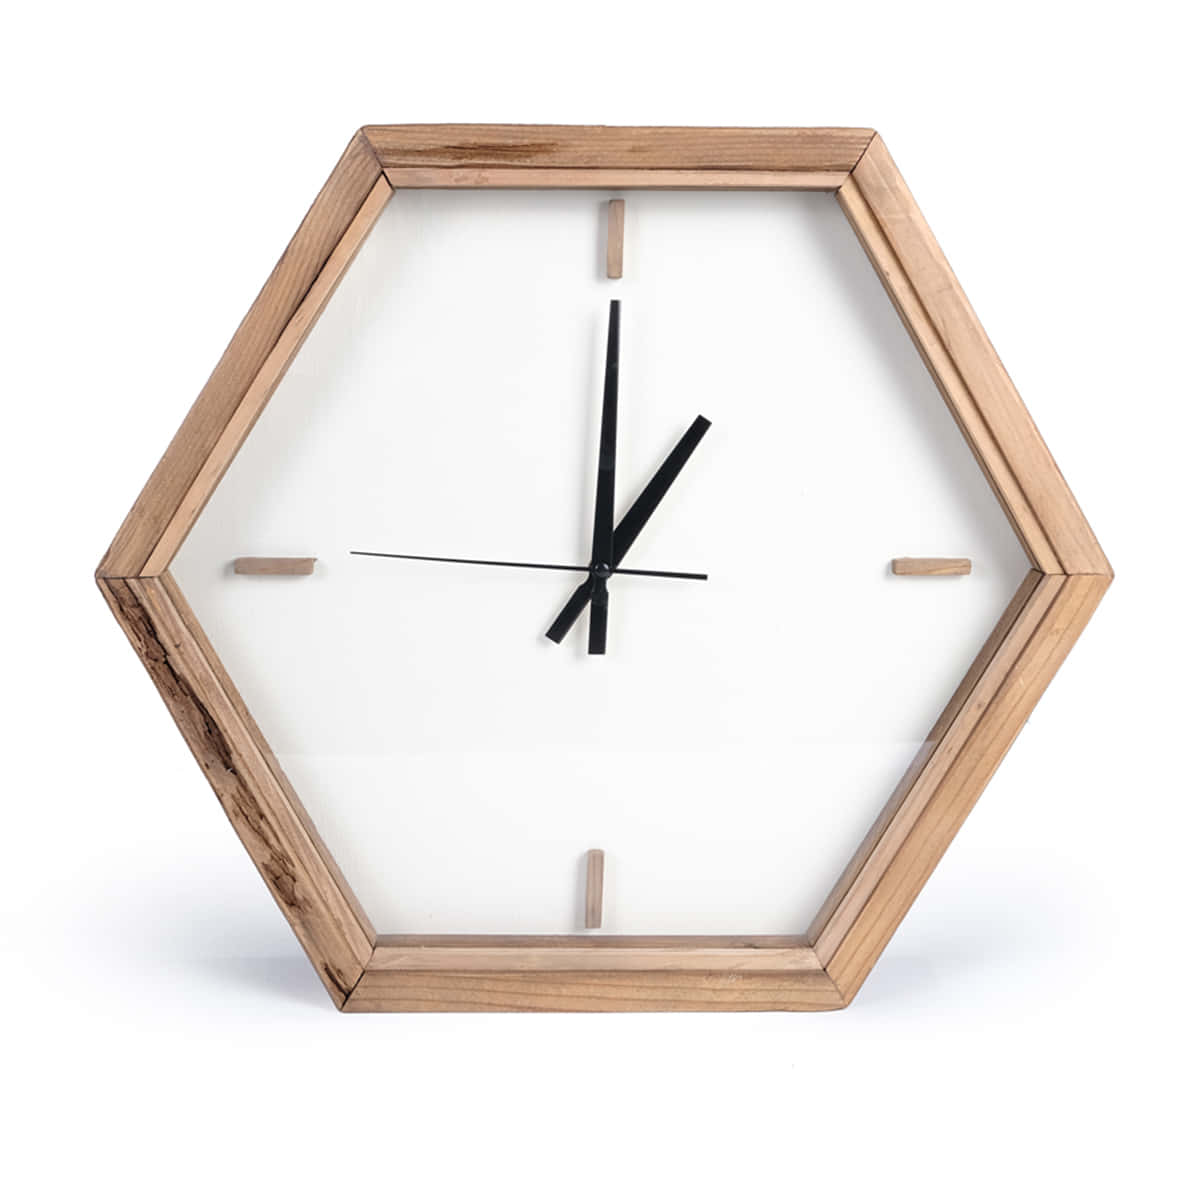 Relojde Madera Hexagonal En Una Imagen Blanca Y Simple.